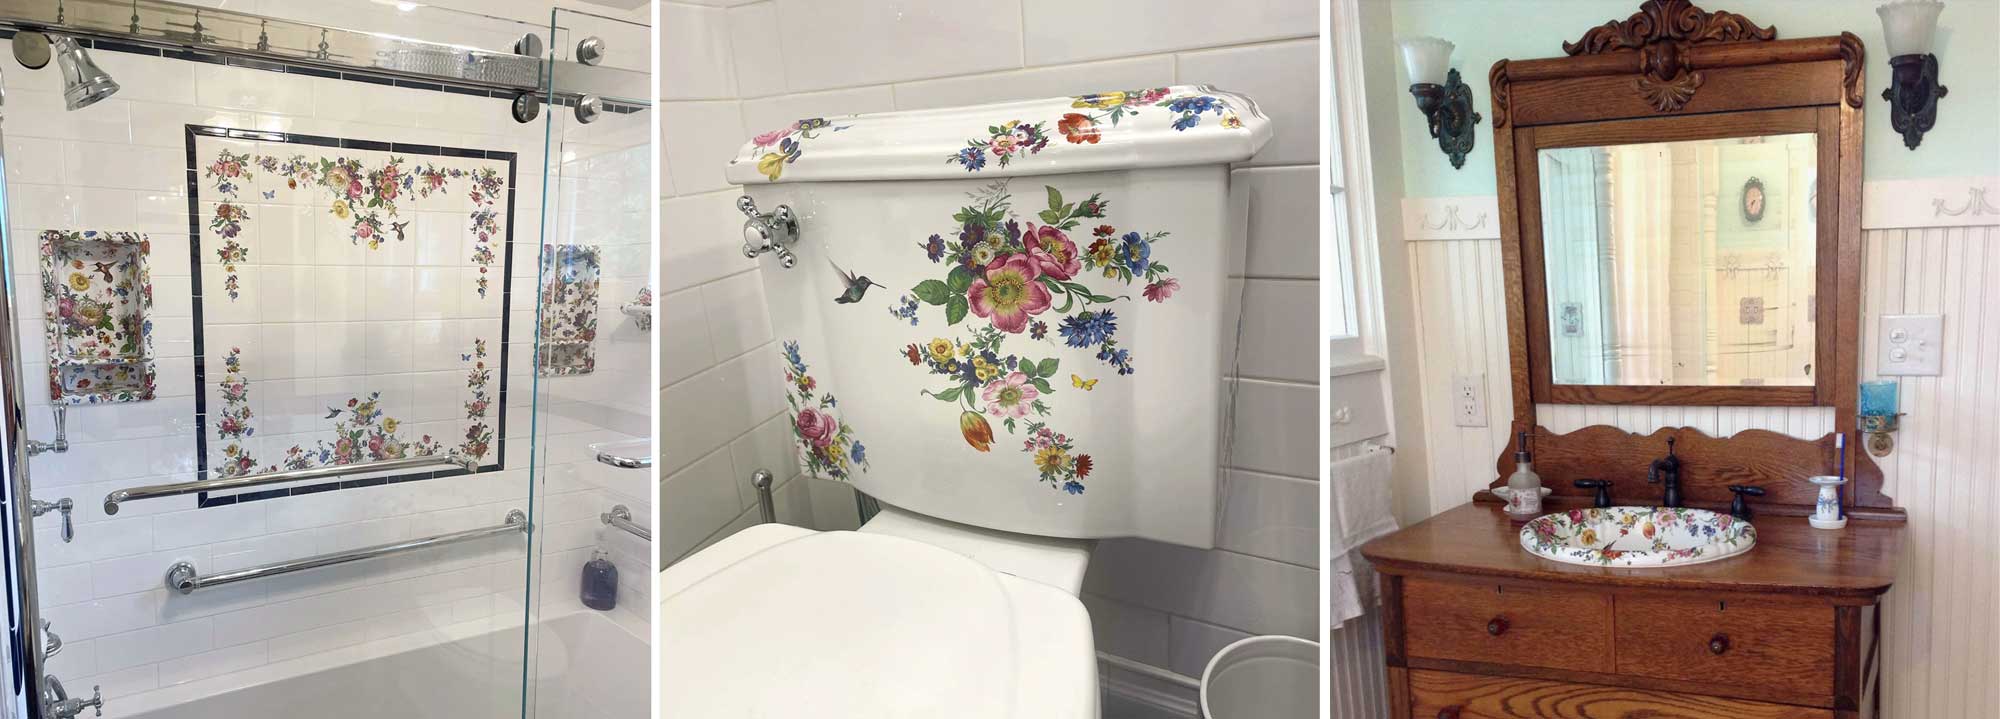 custom flower tile mural, shower shelves, hand painted kohler toilet and antique dresser vanity with painted flower sink